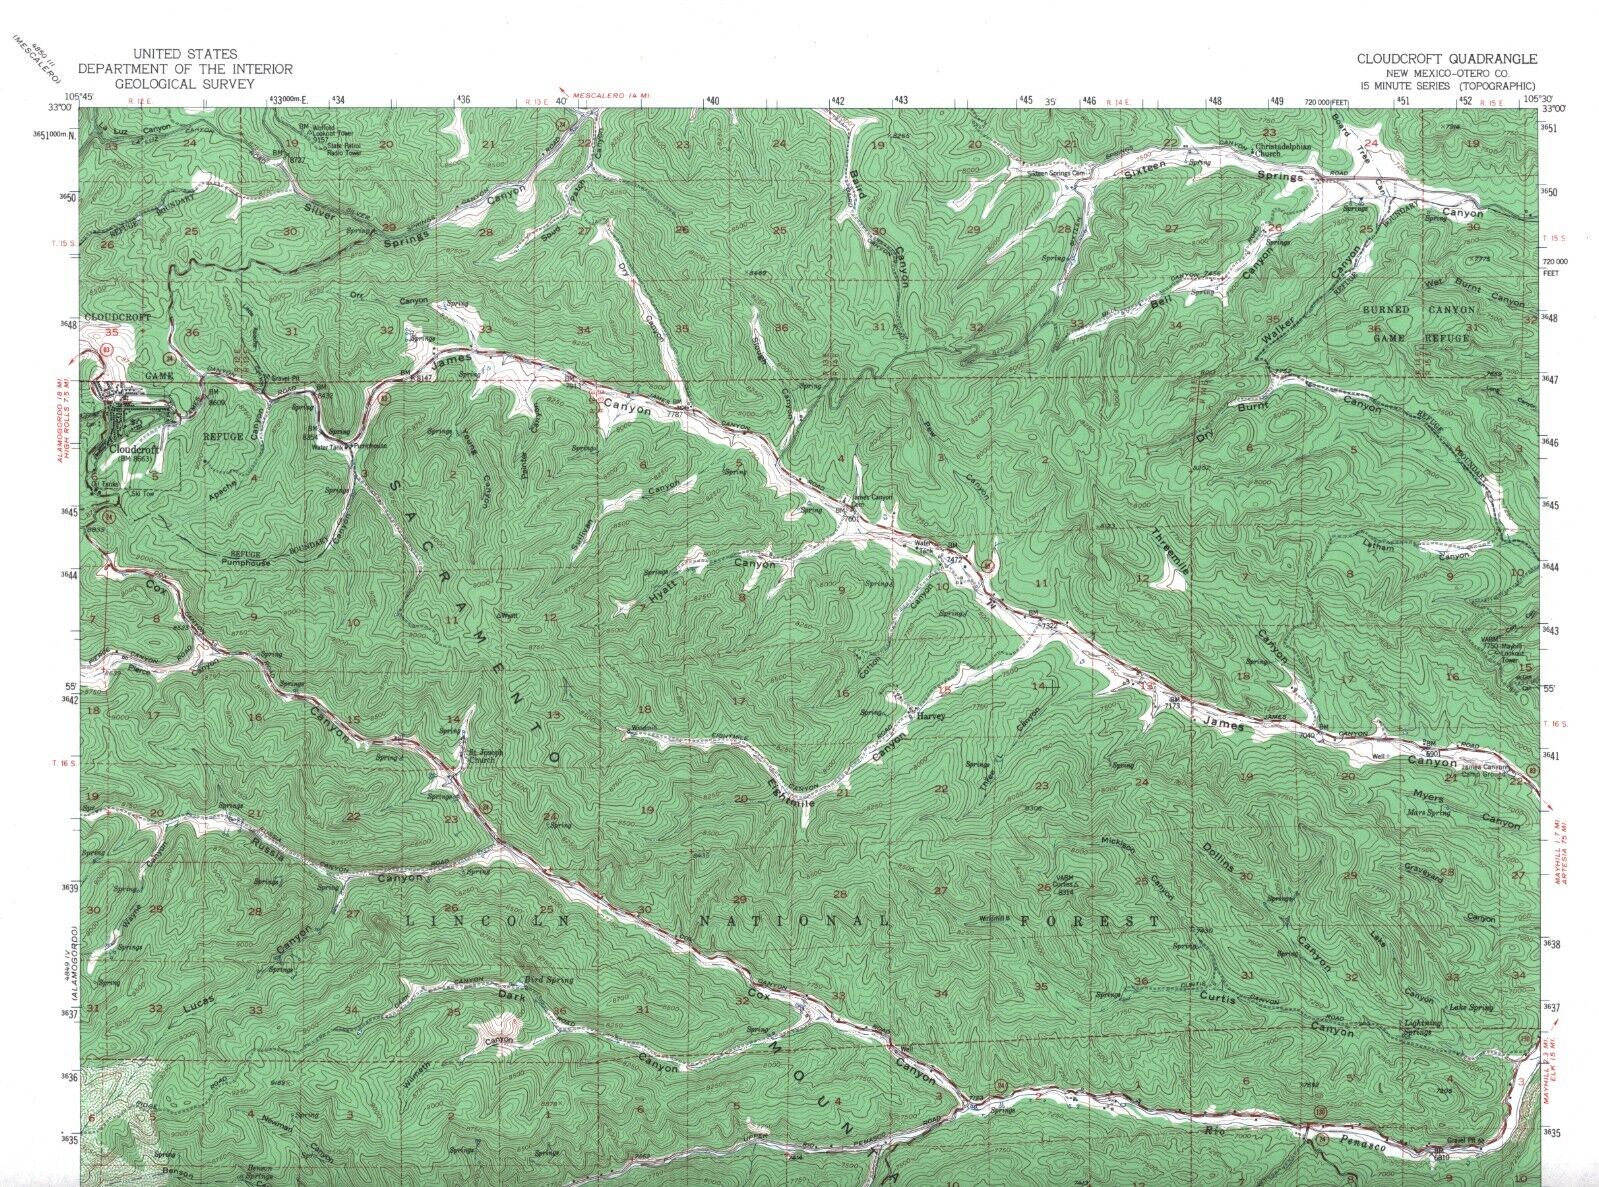 Cloudcroft Quadrangle, New Mexico 1952 Topo Map USGS 15 Minute Topographic